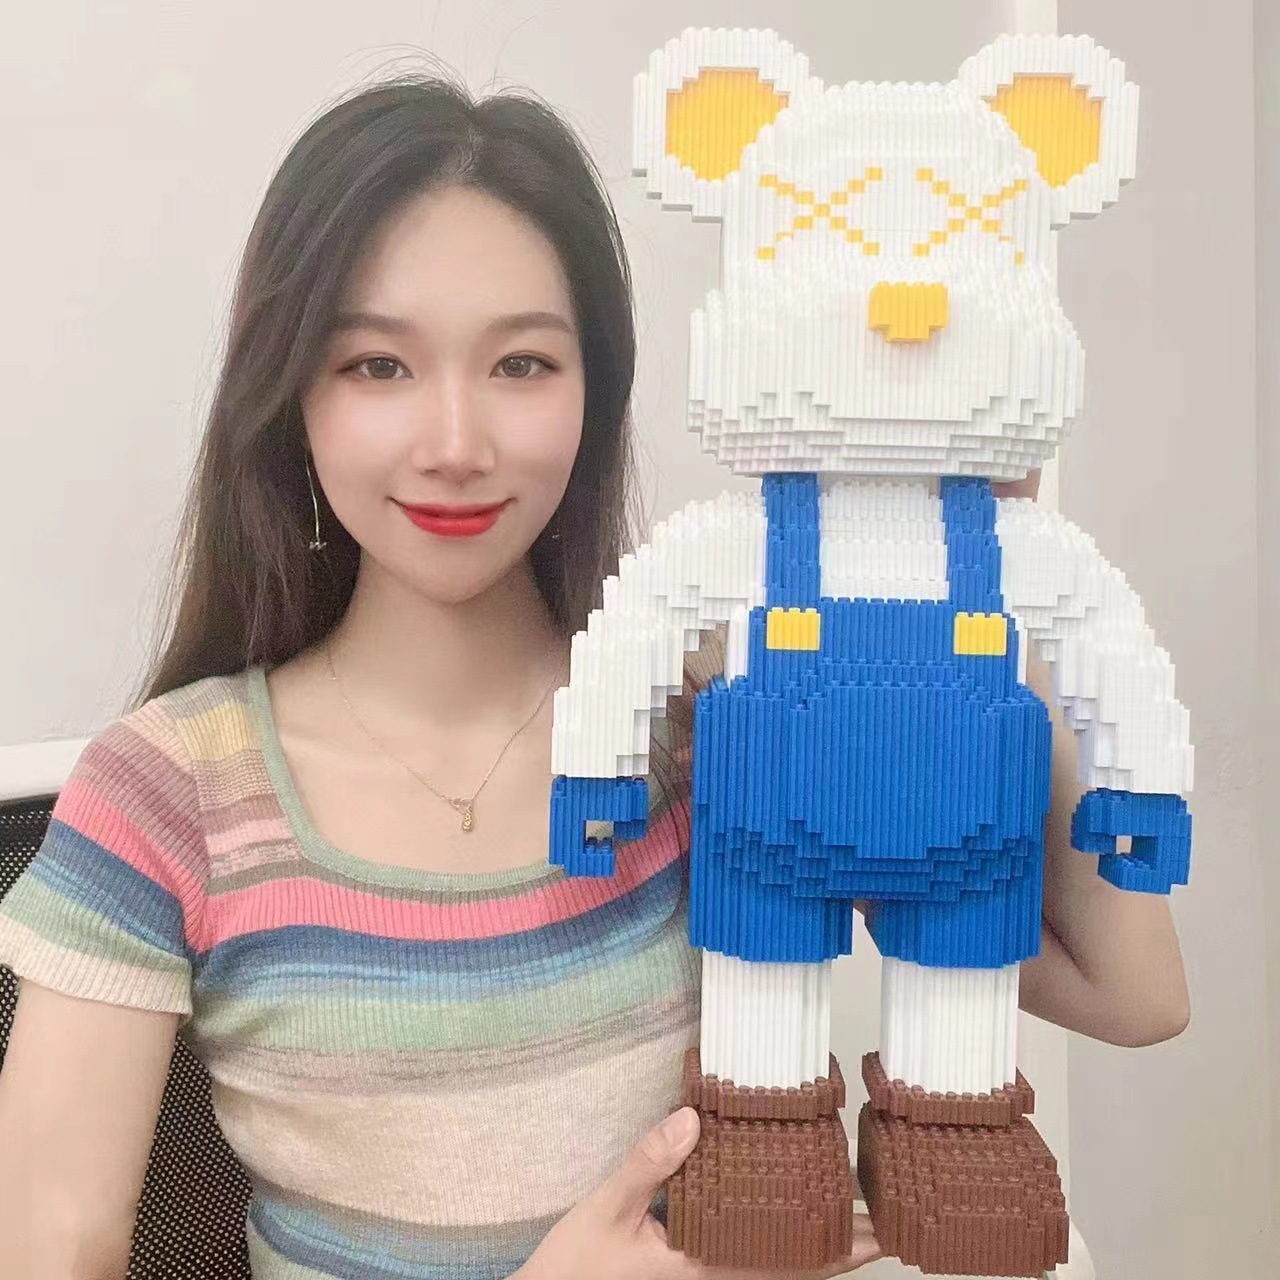 bộ đồ chơi xếp hình lắp ráp lego gấu bearbrick Love jinx boom size lớn 45cm 55cm 1m cực chất siêu hot